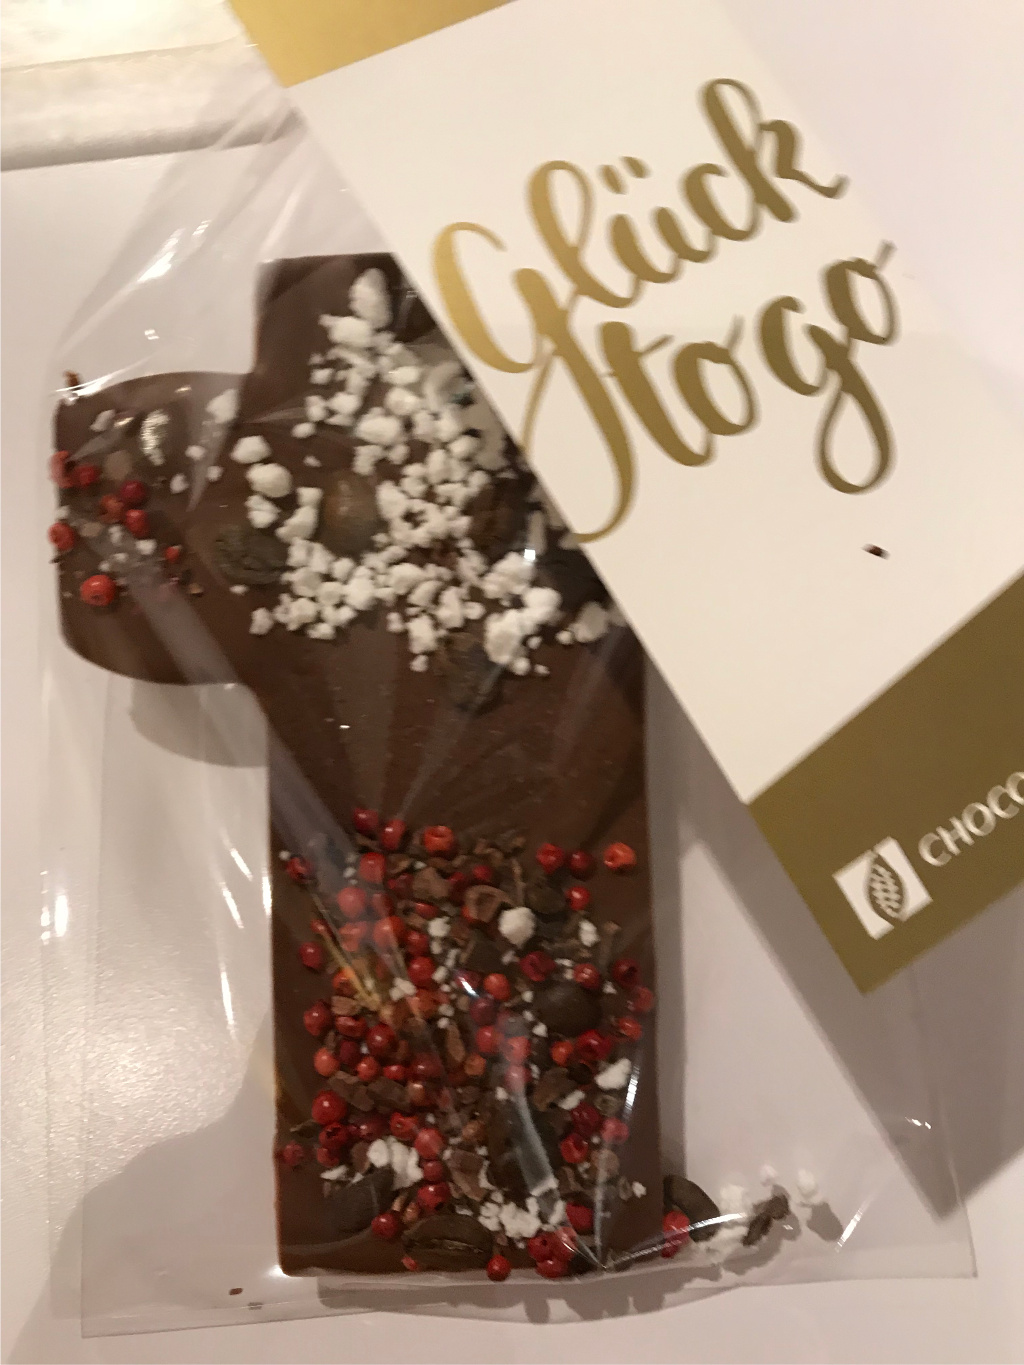 chocoversum - Schokolade zum Selbstverzieren